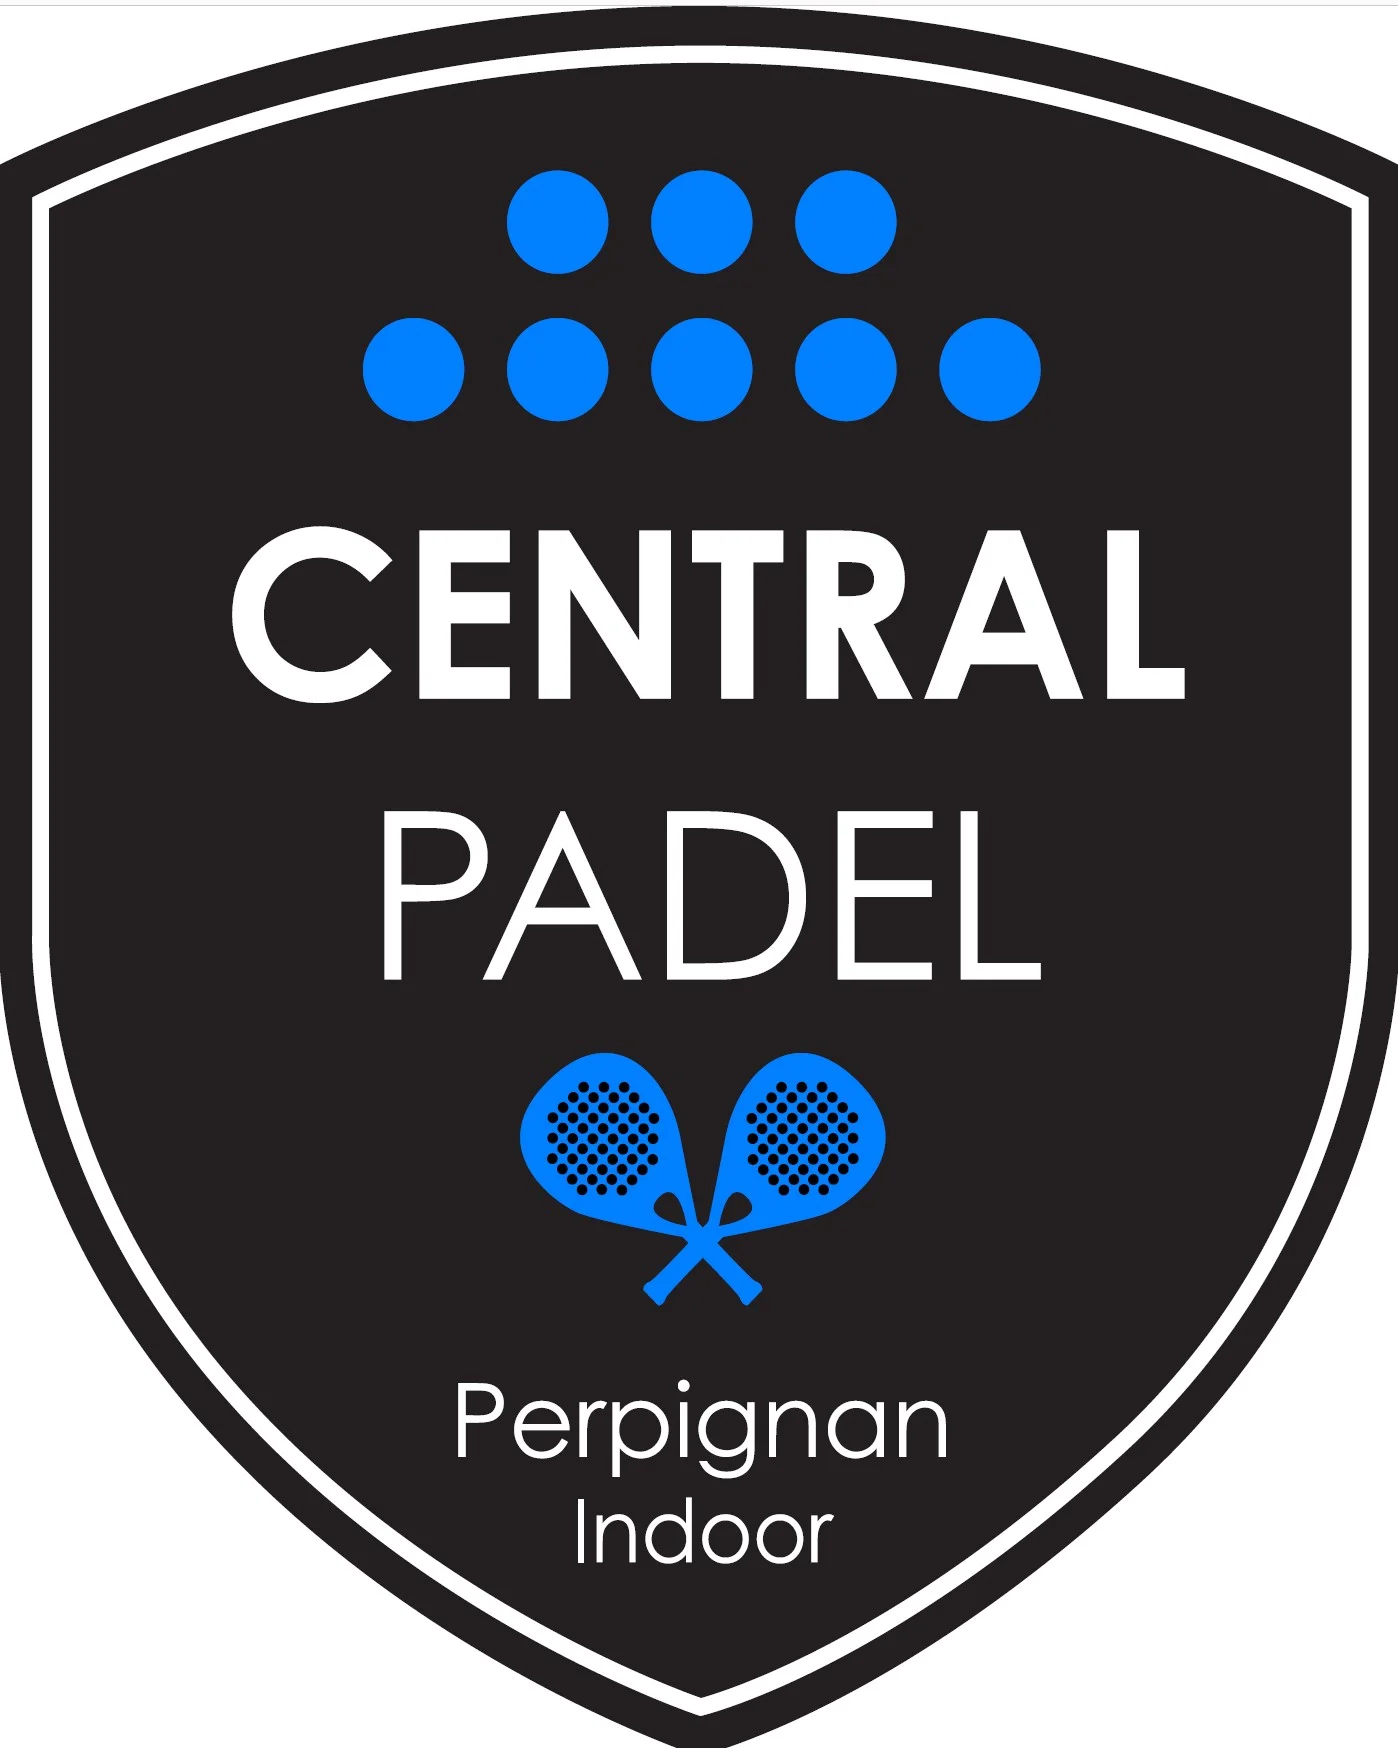 Centralt logo padel perpignan